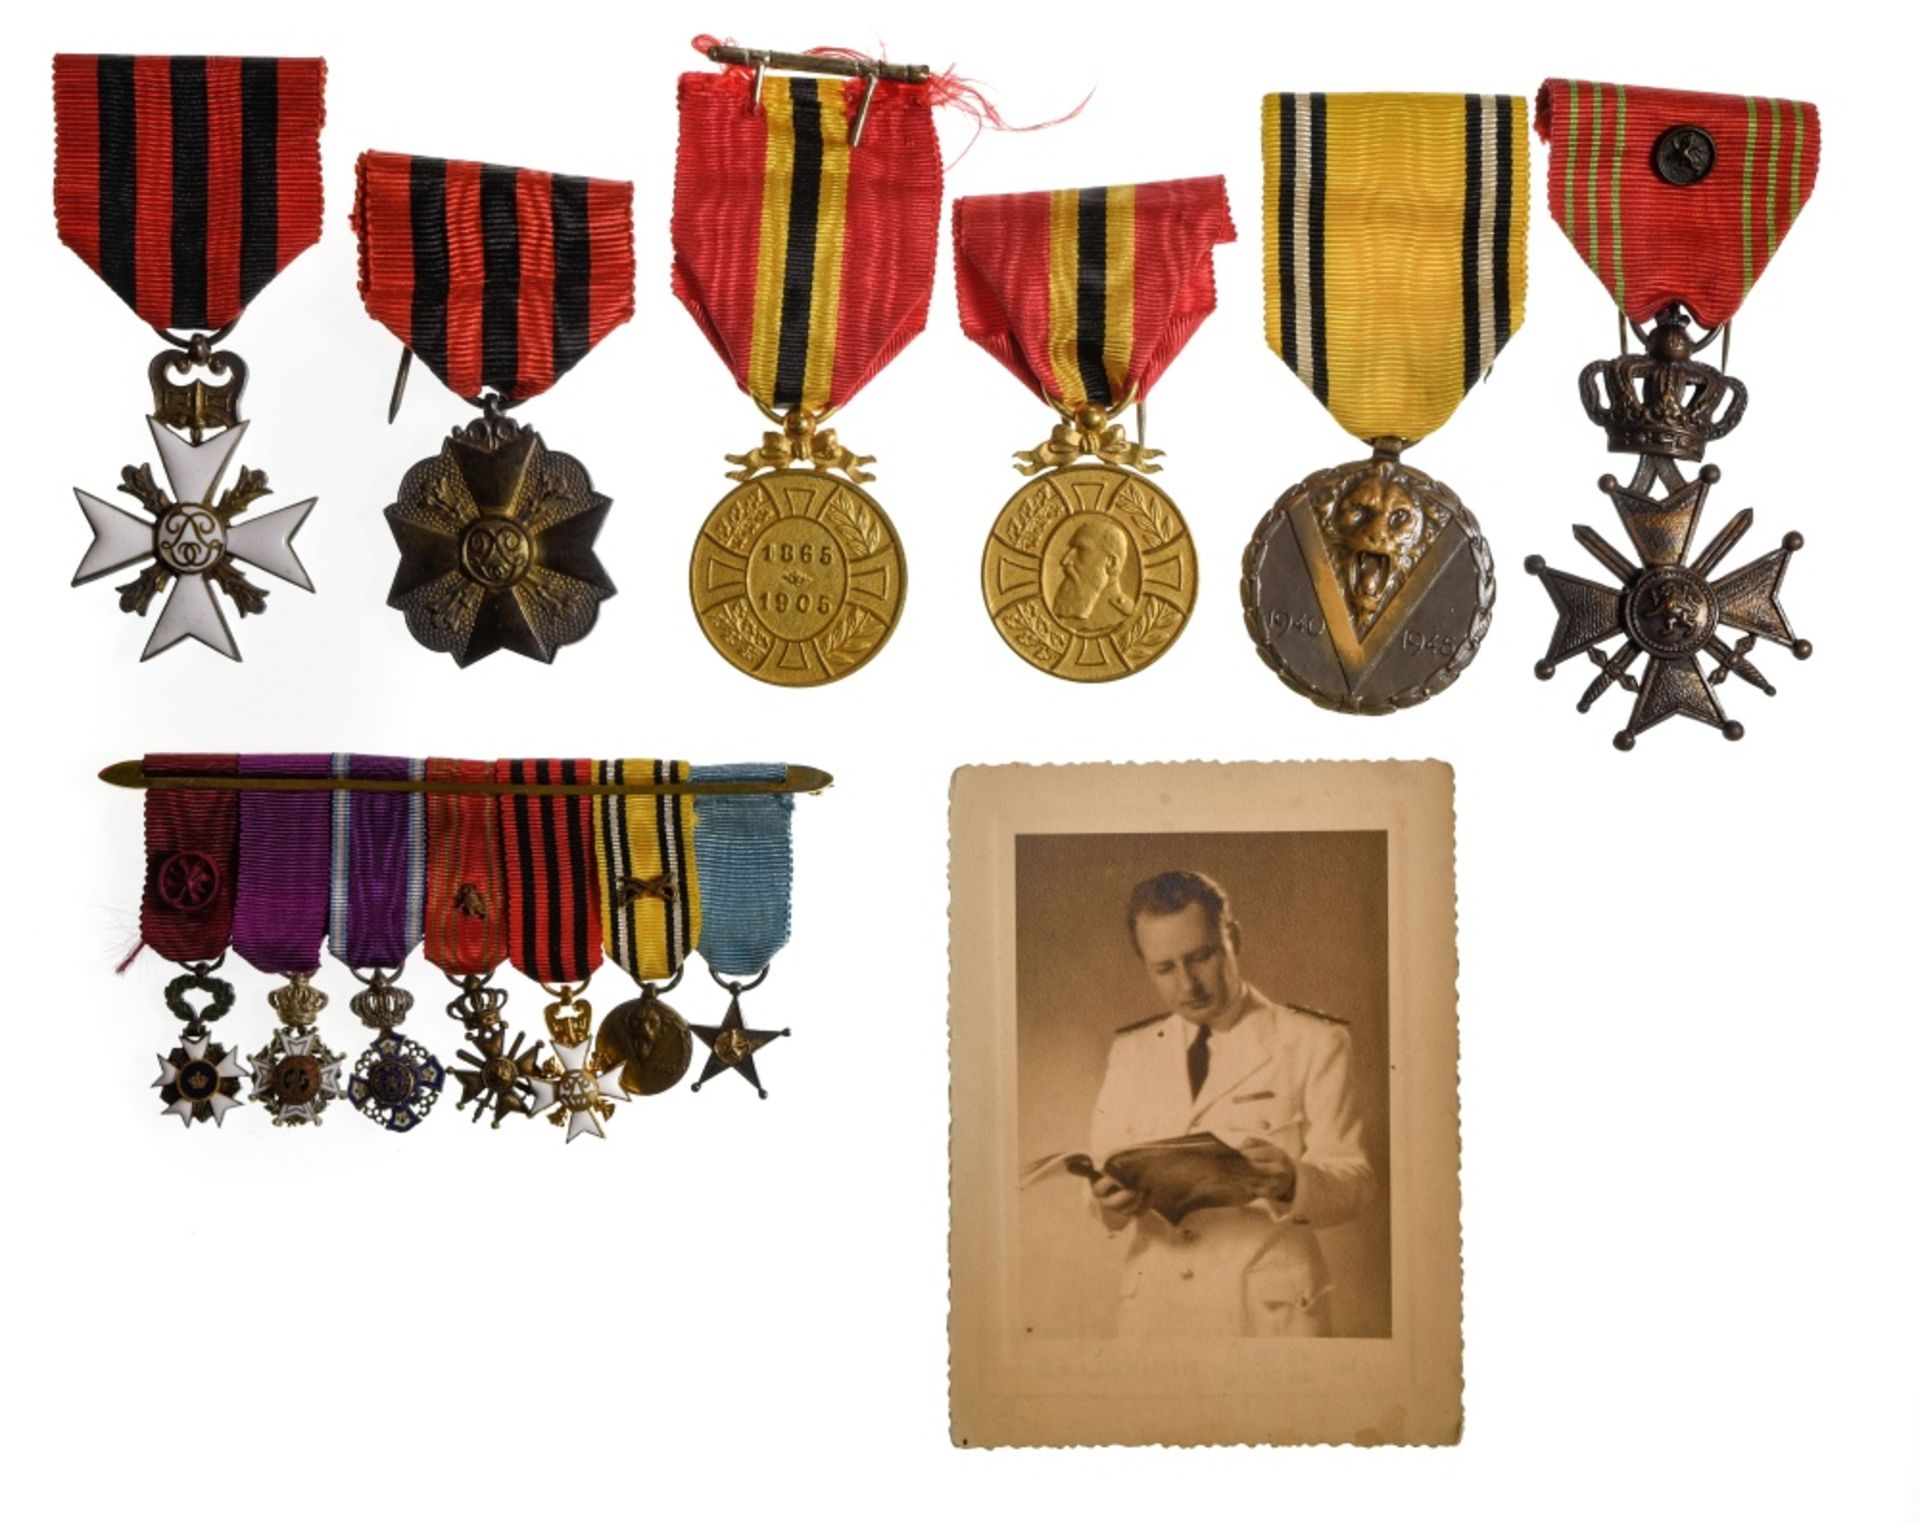 Belgium Group of orders, belonged to Pierre De Greift including Croix de guerre with bronze lion